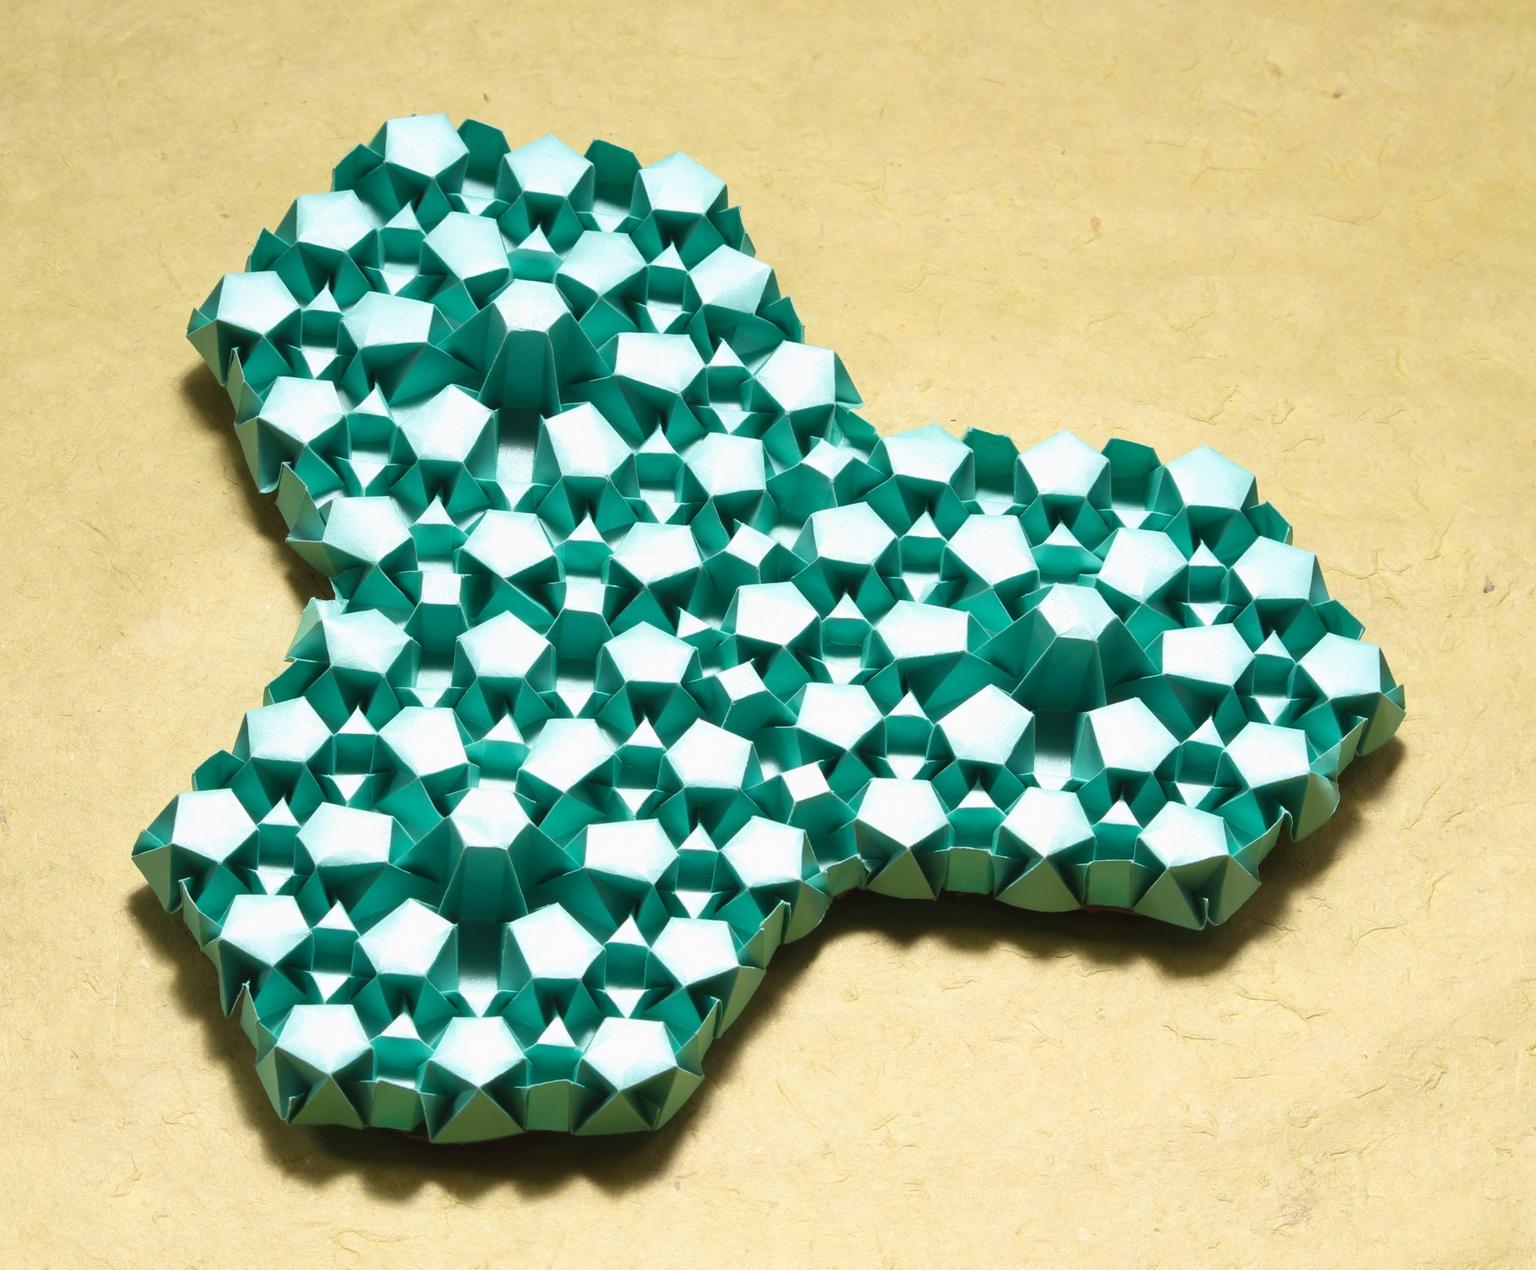 Image for entry 'Pentagonal Tiling'